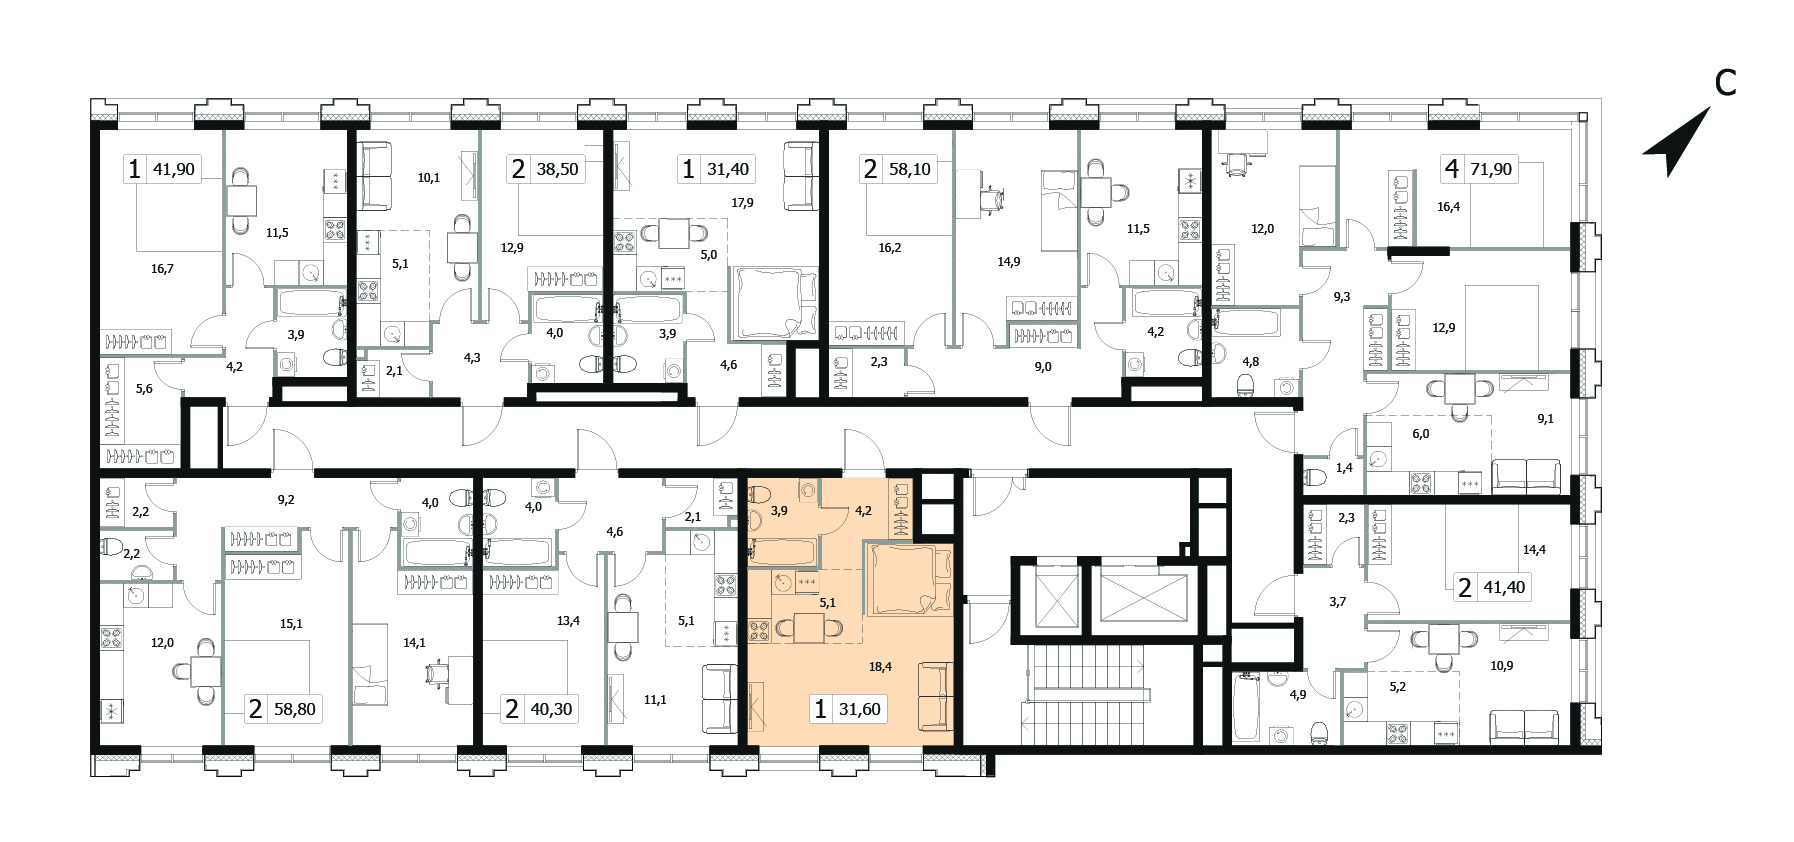 Однокомнатная квартира 31.6м², 9 этаж, Корпус 5 Жилой комплекс «Заречный квартал»